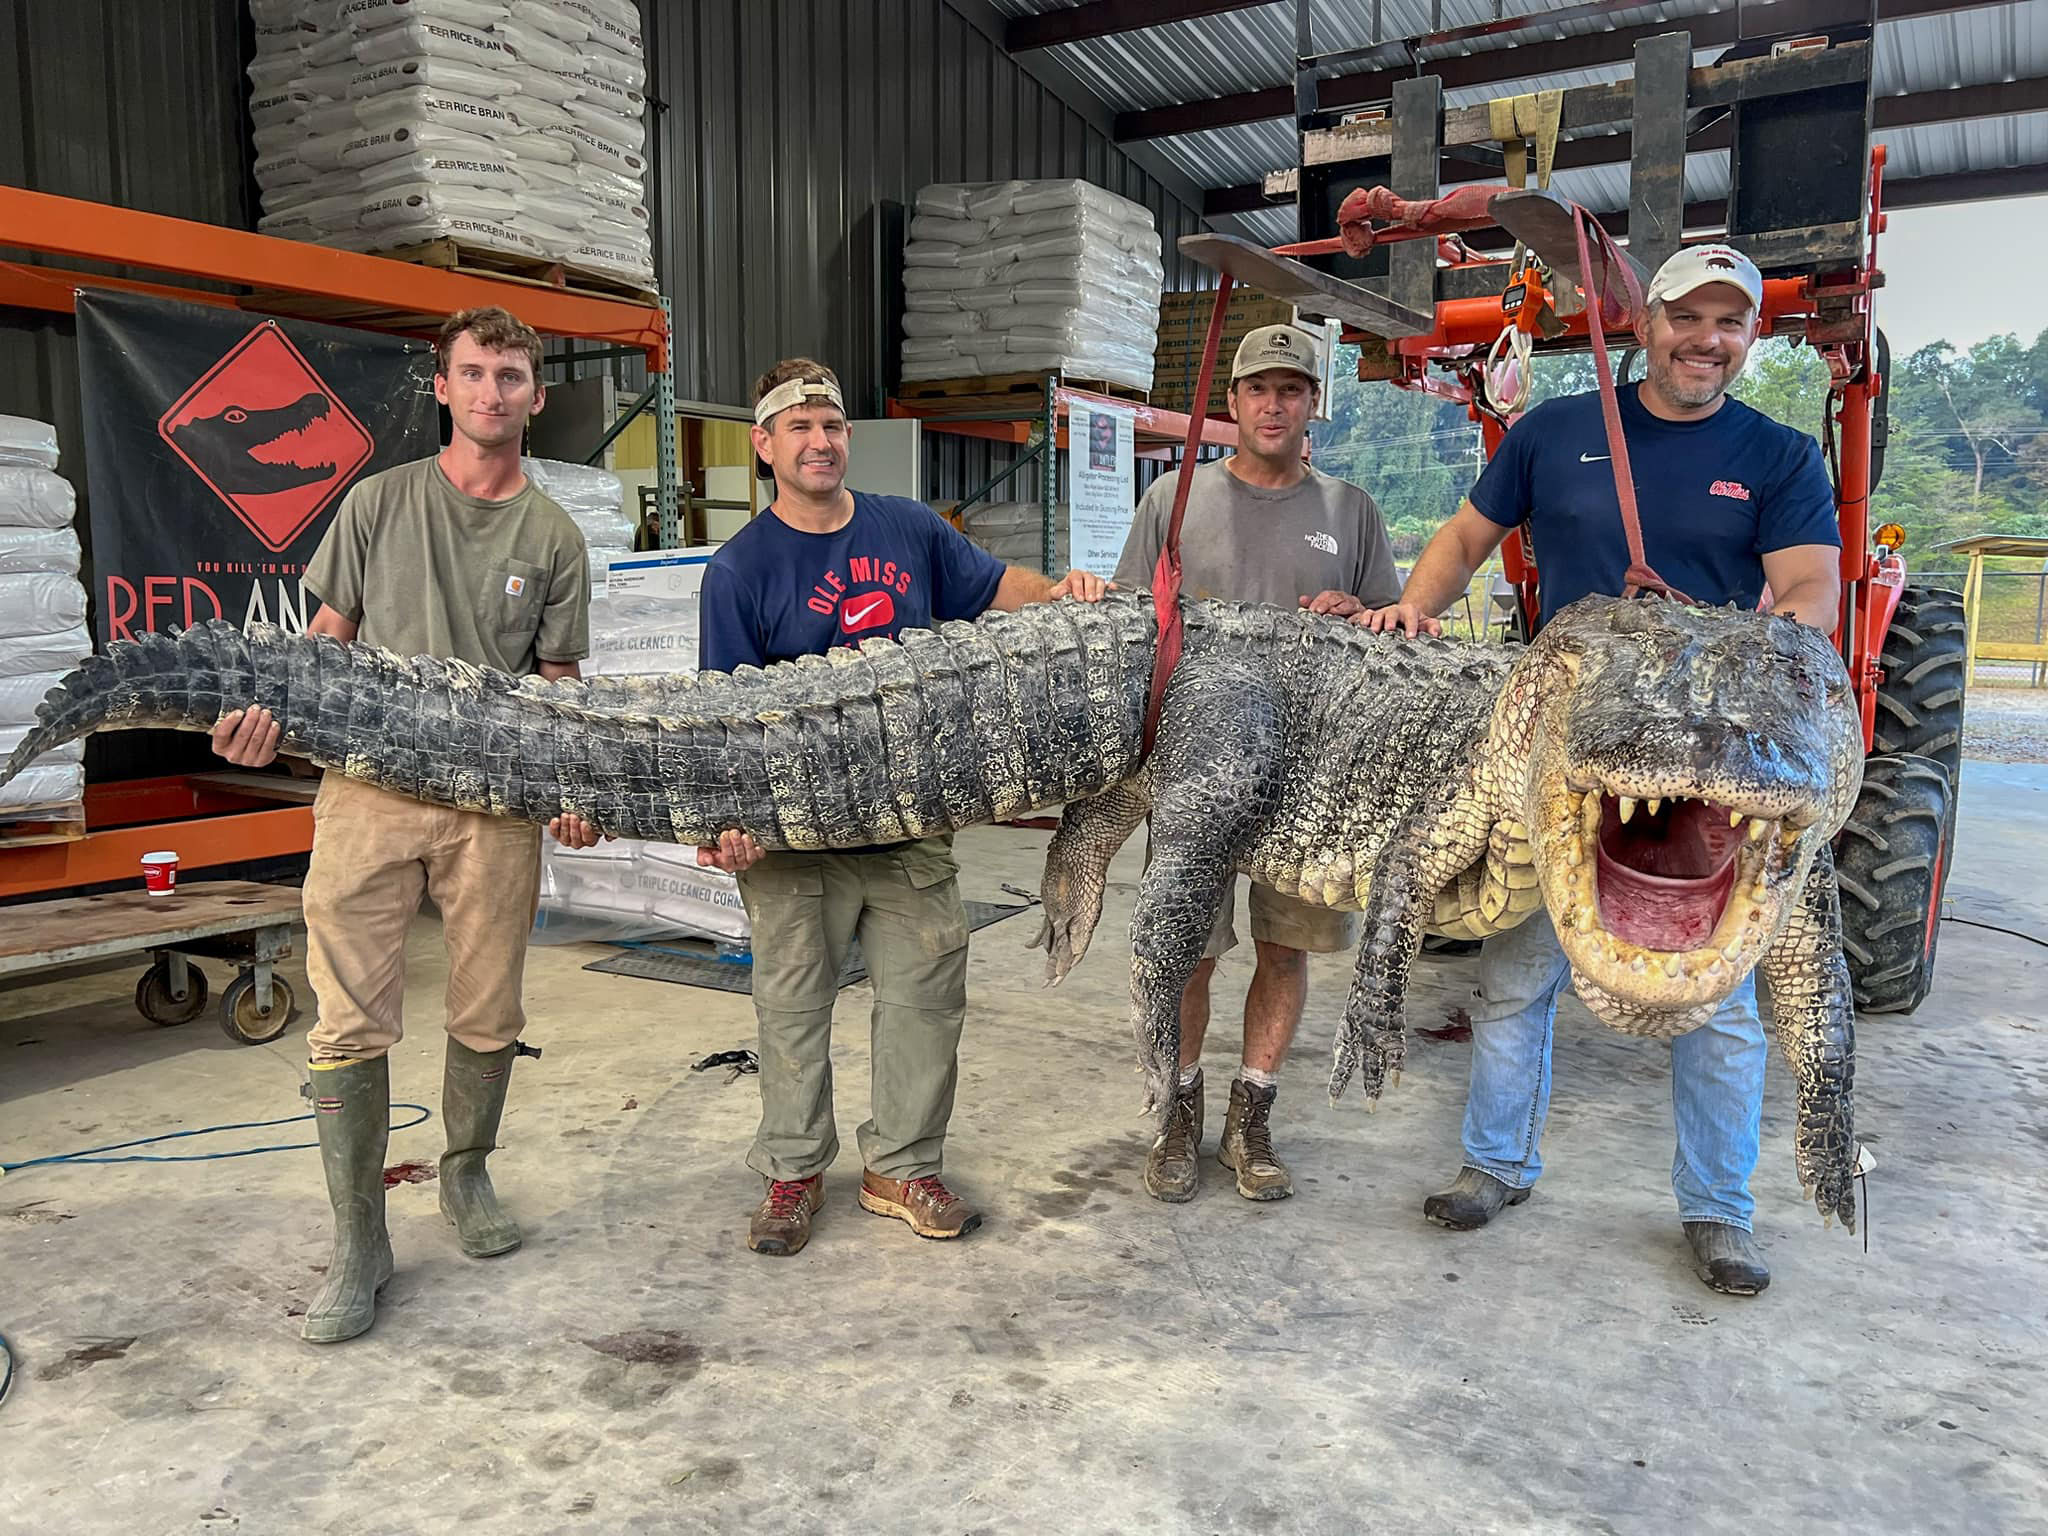 “Fue un pandemonio”: atraparon un cocodrilo del tamaño de un monstruo de película